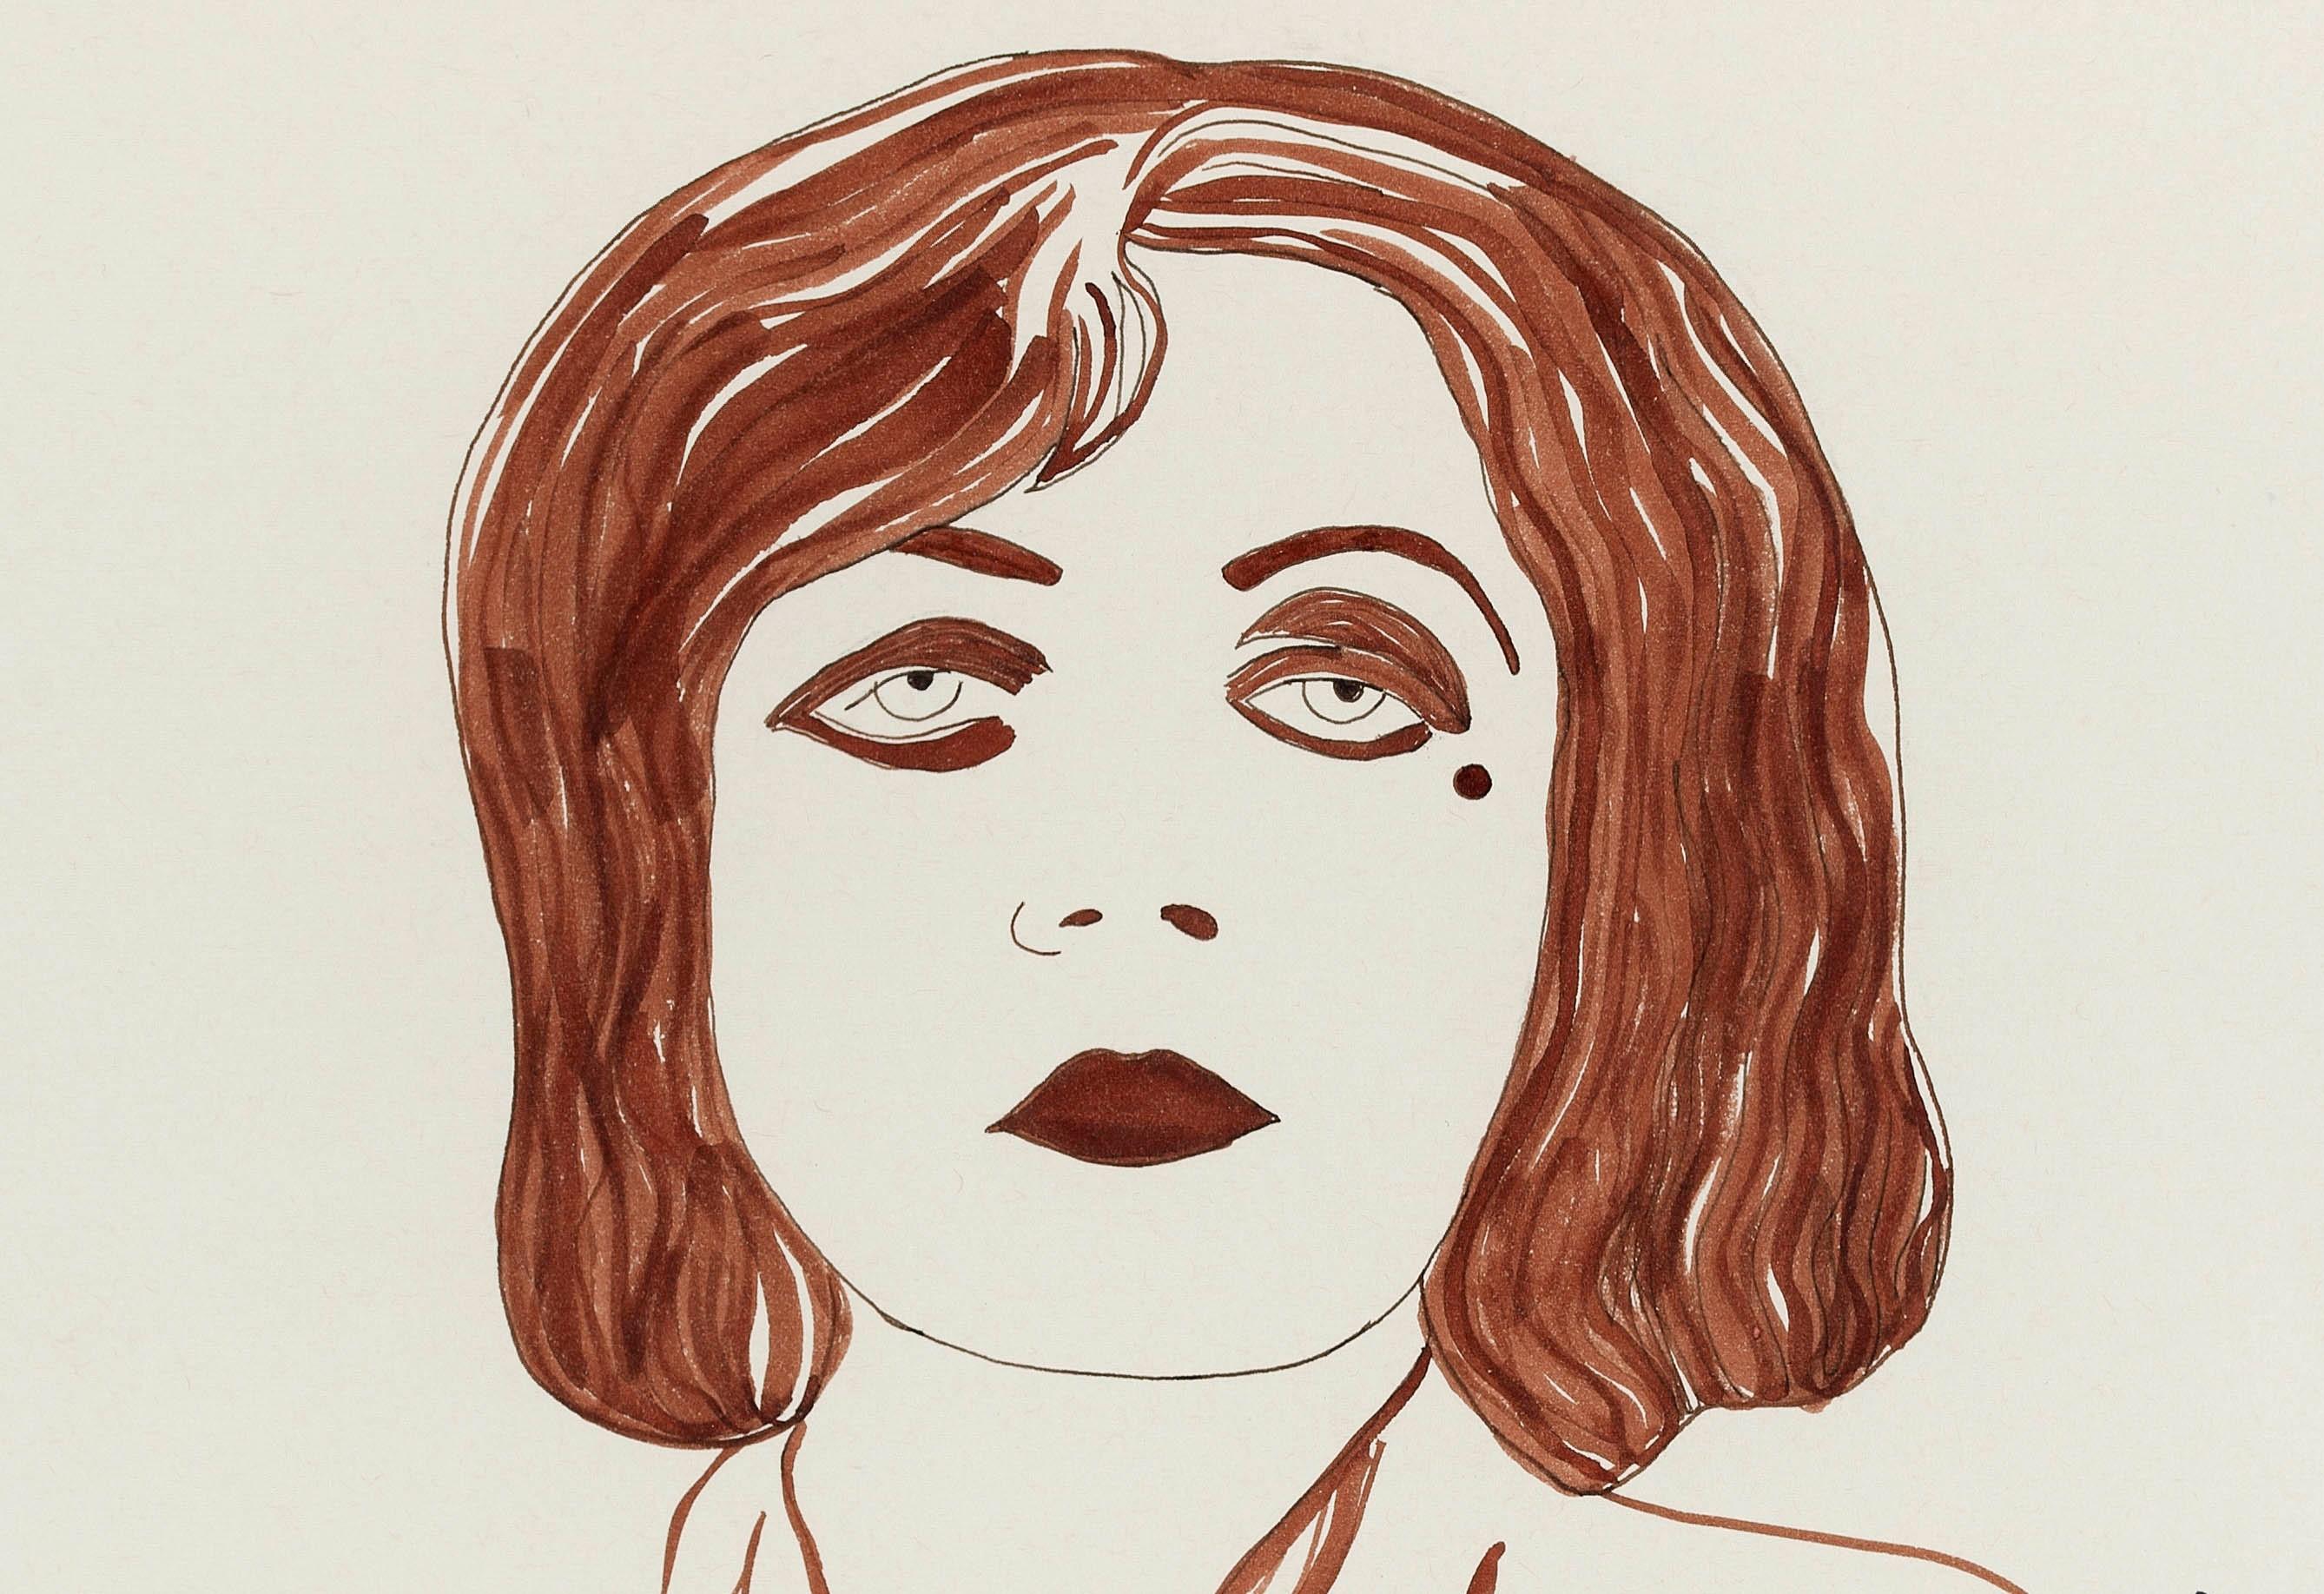 Pola Negri II, 2016
Aus der Serie Die Entzauberten
Tinte auf Papier 
Bildgröße: 16,5 Zoll. H x 11.6 in. W 
Rahmengröße: 20 Zoll. H x 16 in. B x 1 Zoll T

Das Projekt Dis-enchanted,
Was wäre, wenn sich die Realität vor unseren Augen tatsächlich